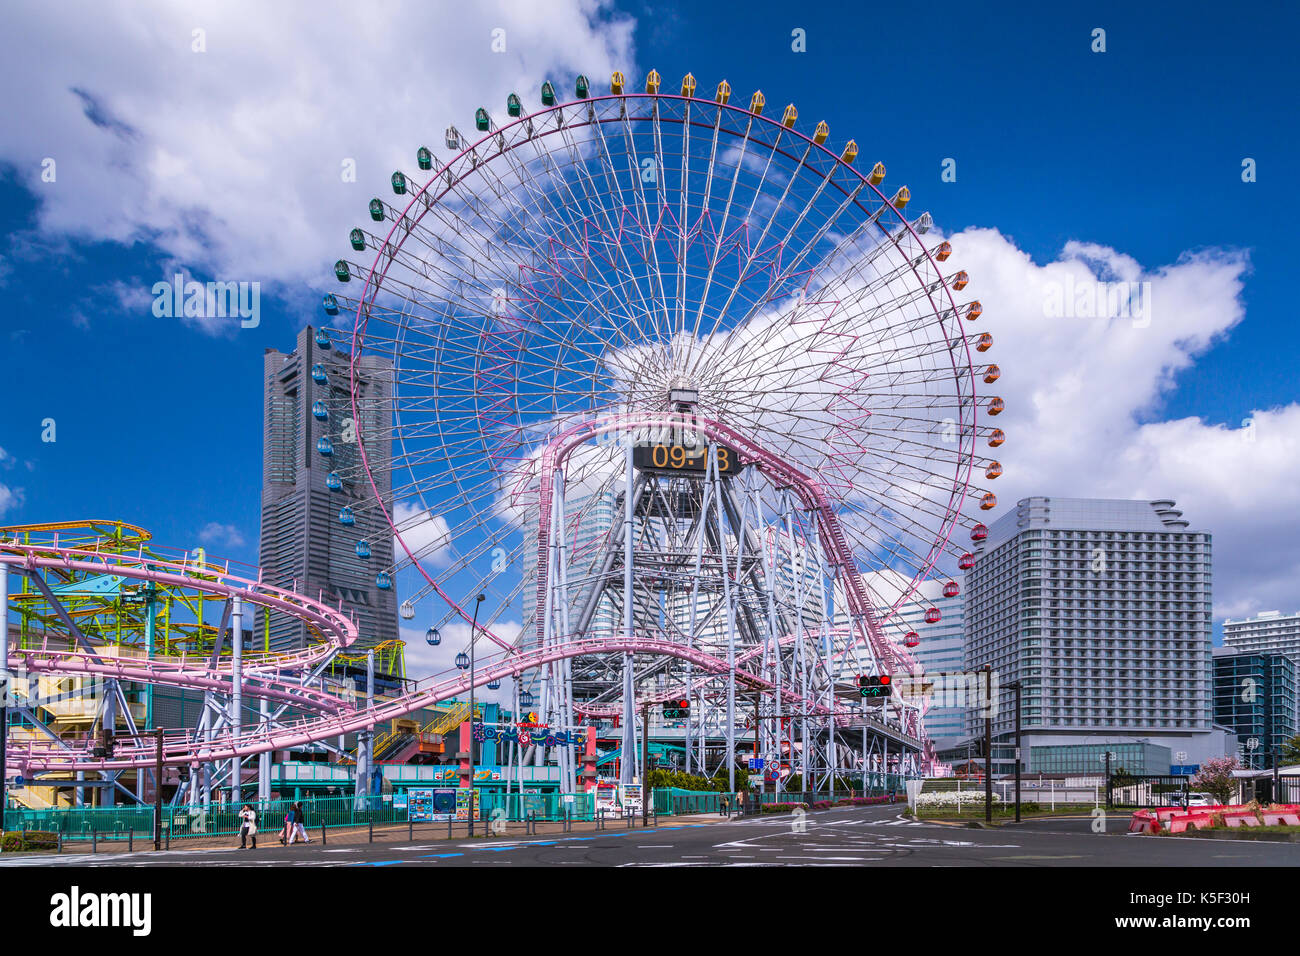 Die Cosmoworld Vergnügungspark im Minato Mirai 21 Seaside Stadtgebiet in der Hafenstadt Yokohama, Japan, Asien. Stockfoto